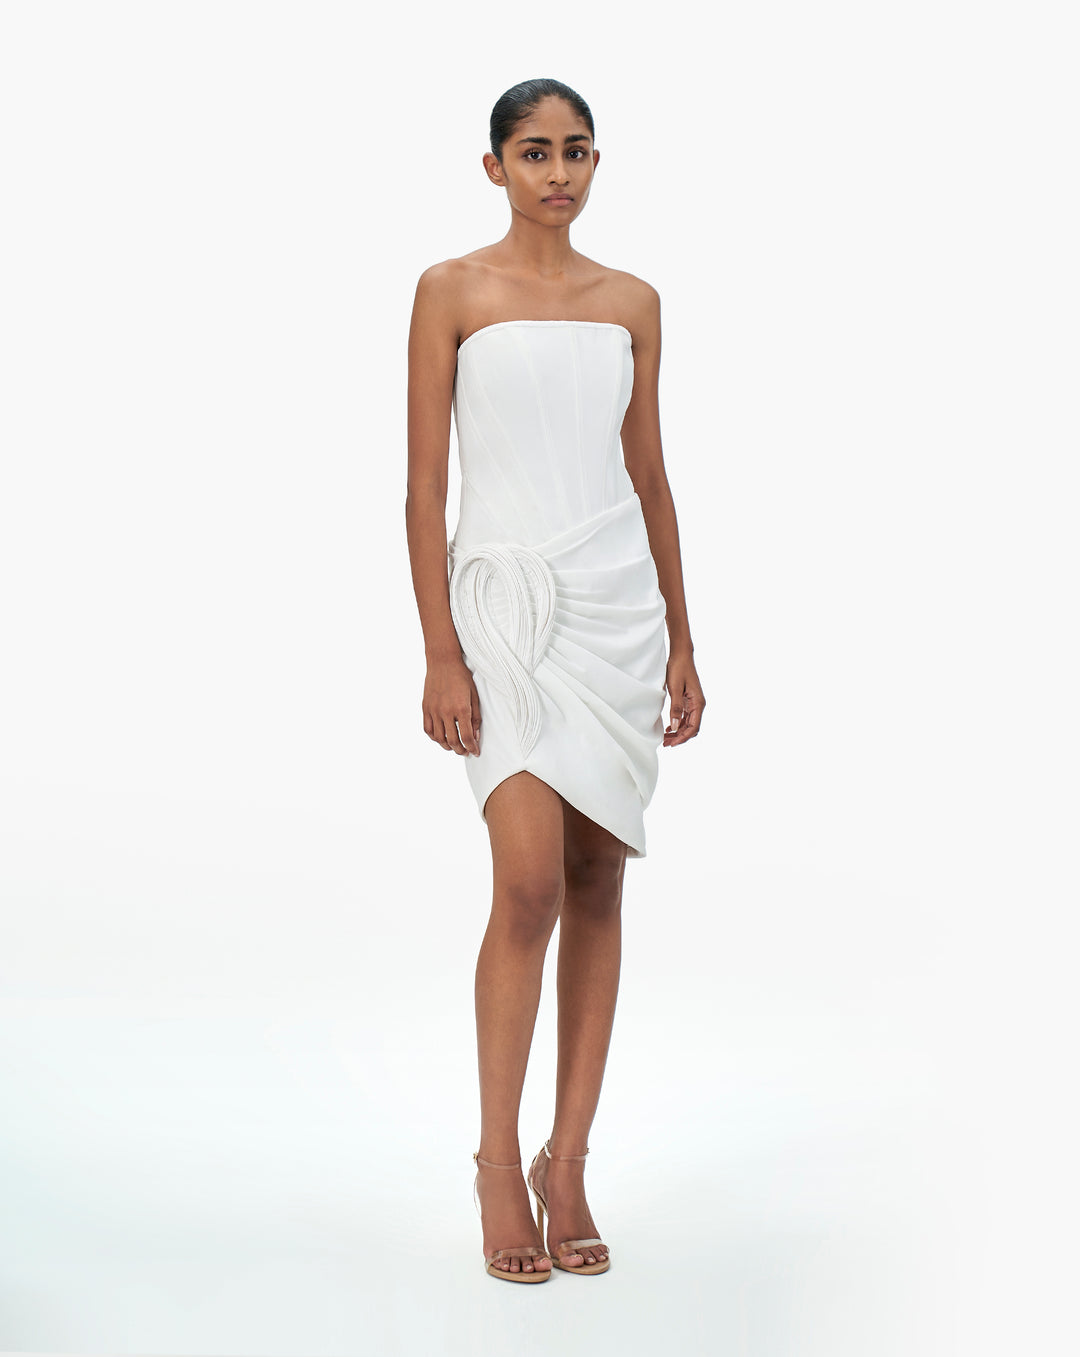 The White Egyptian Dress